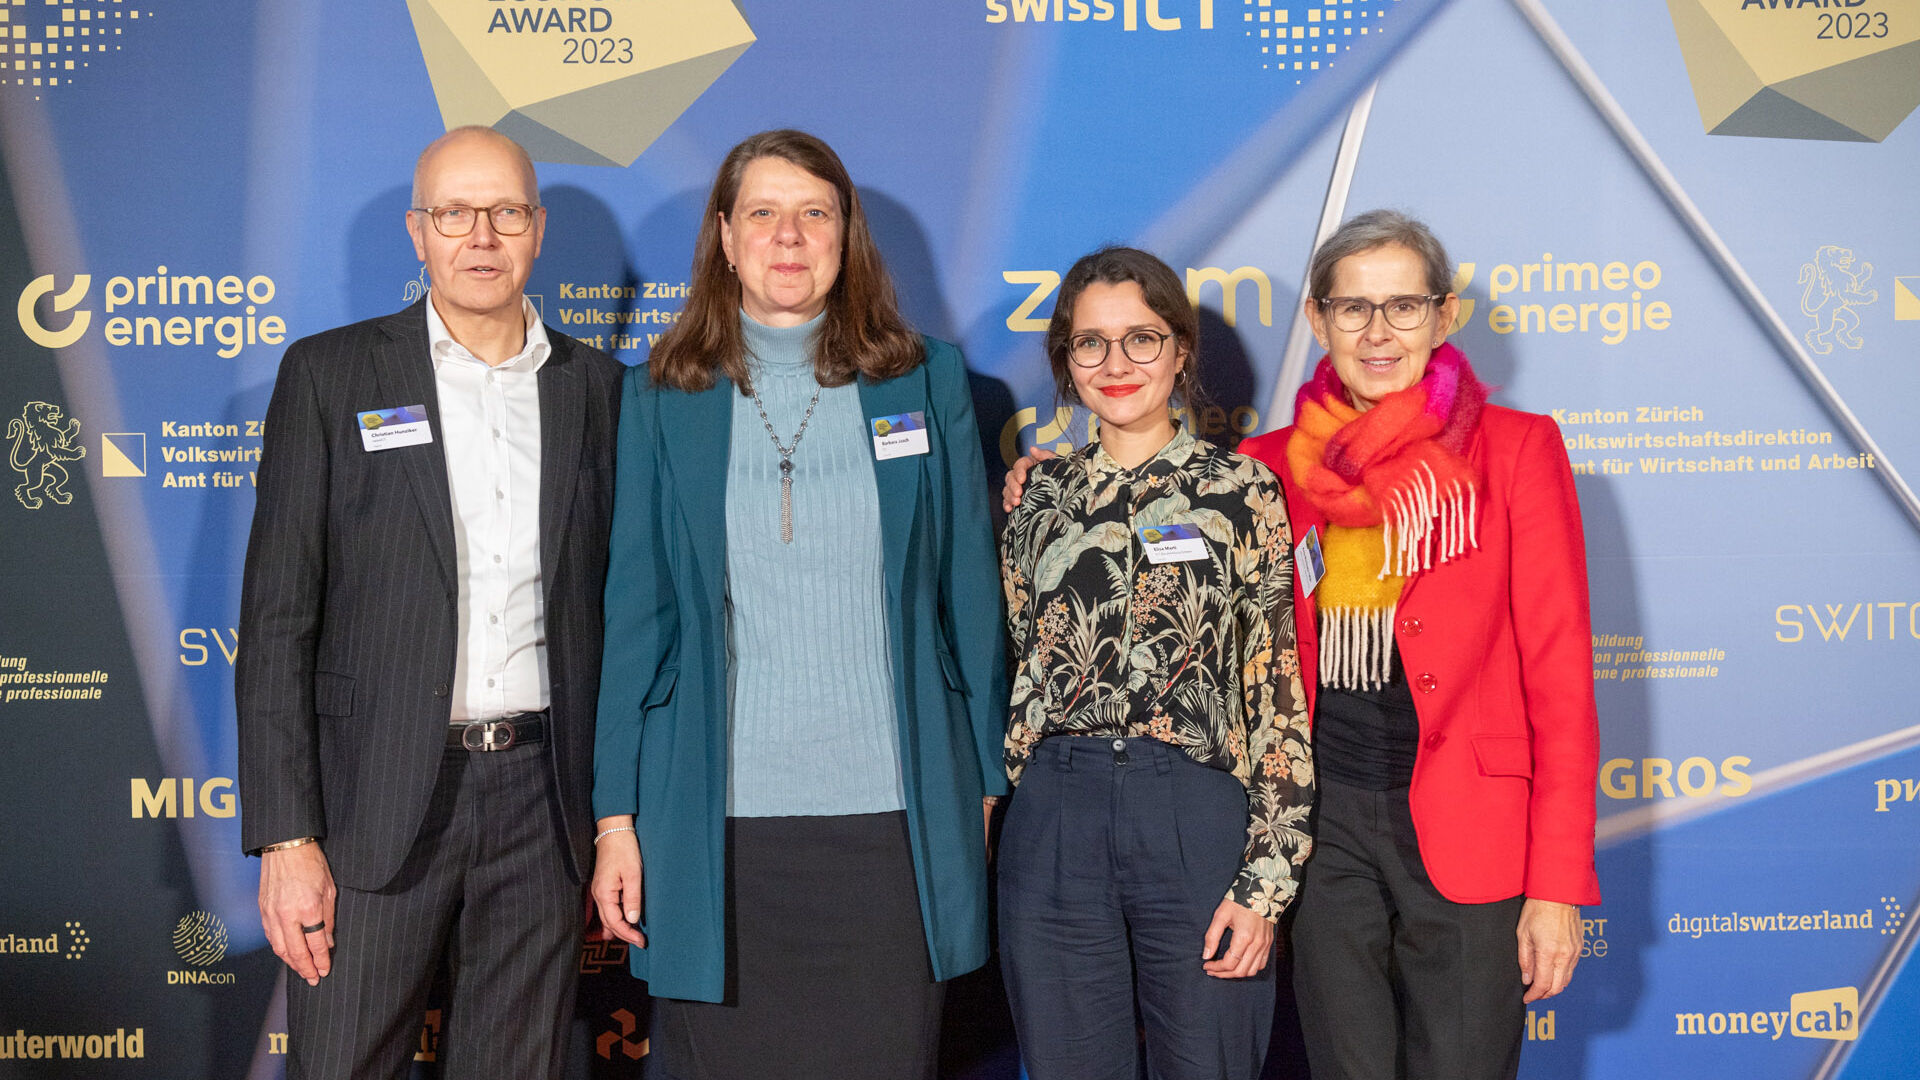 Digital Economy Award: die Fotogalerie der Preisverleihung im Hallenstadion in Zürich in der Schweiz am 16. November 2023